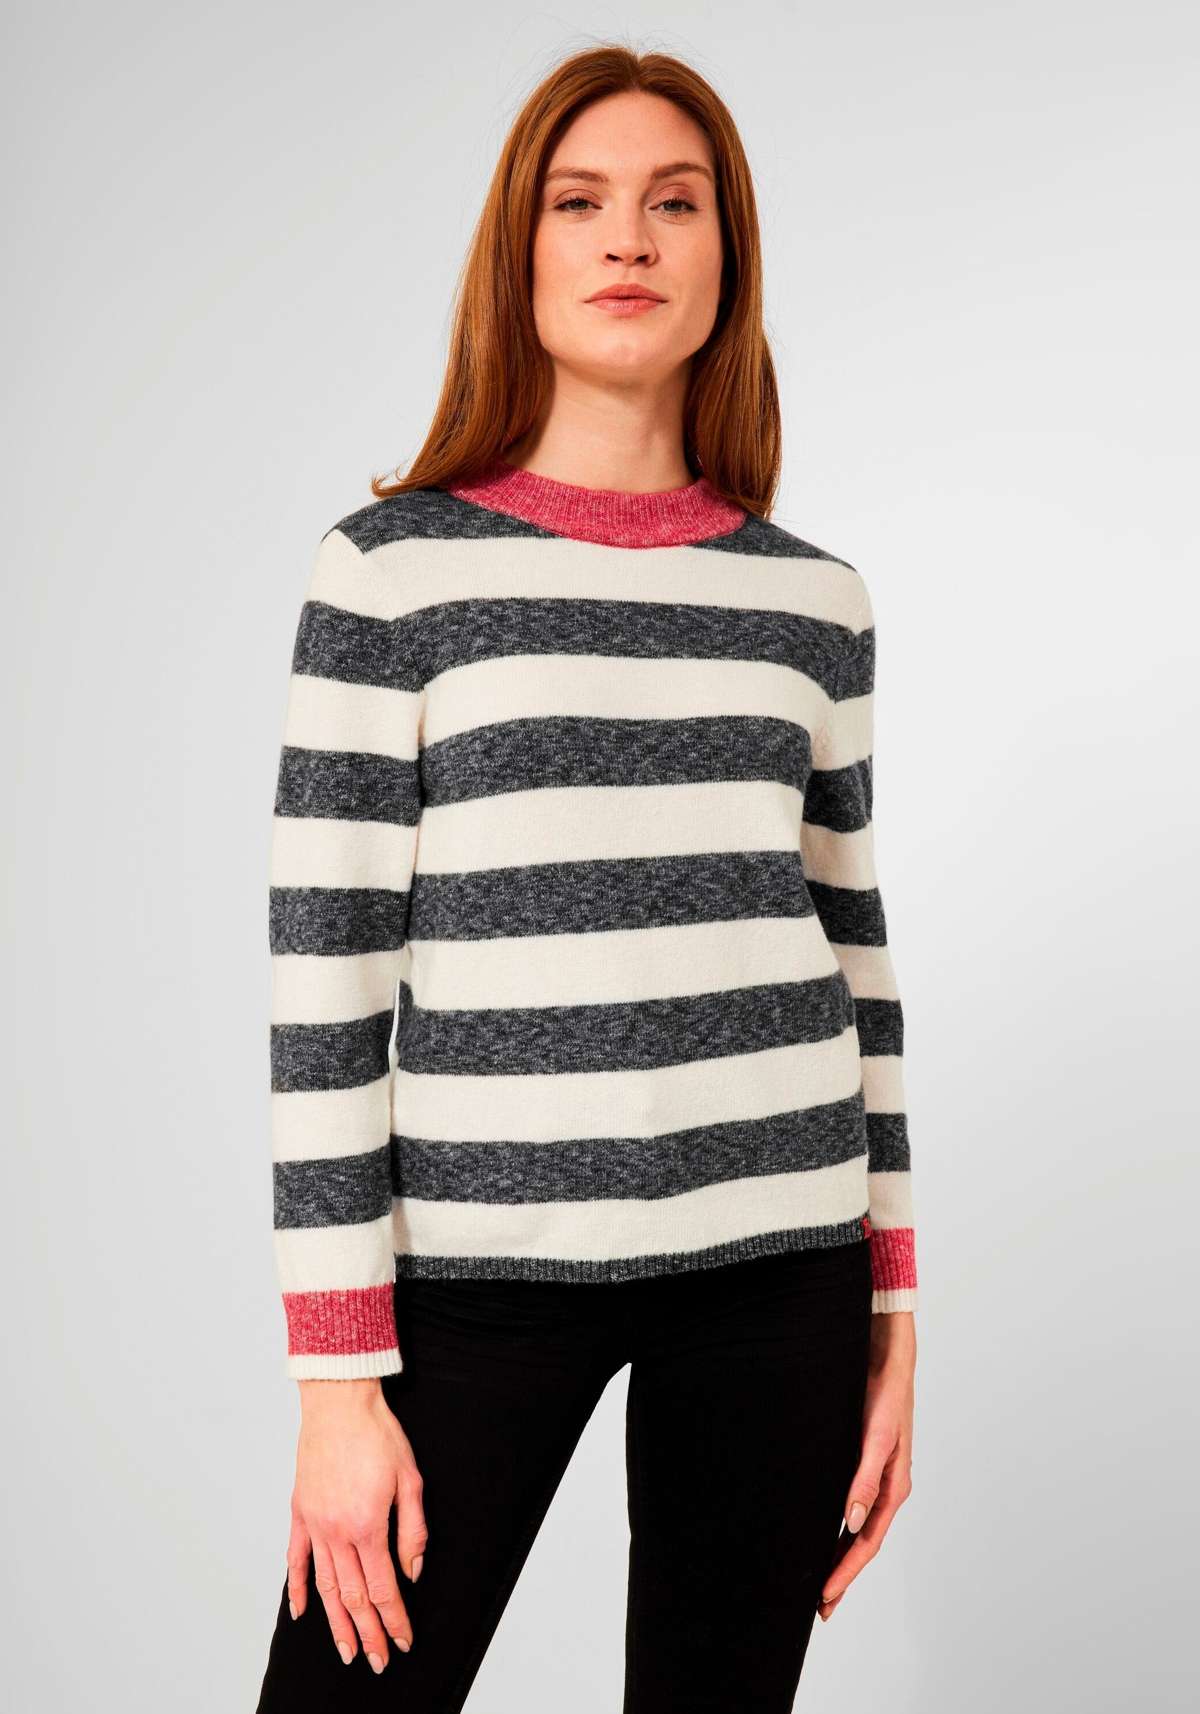 Вязаный свитер с контрастными цветными деталями на горловине и рукавах.